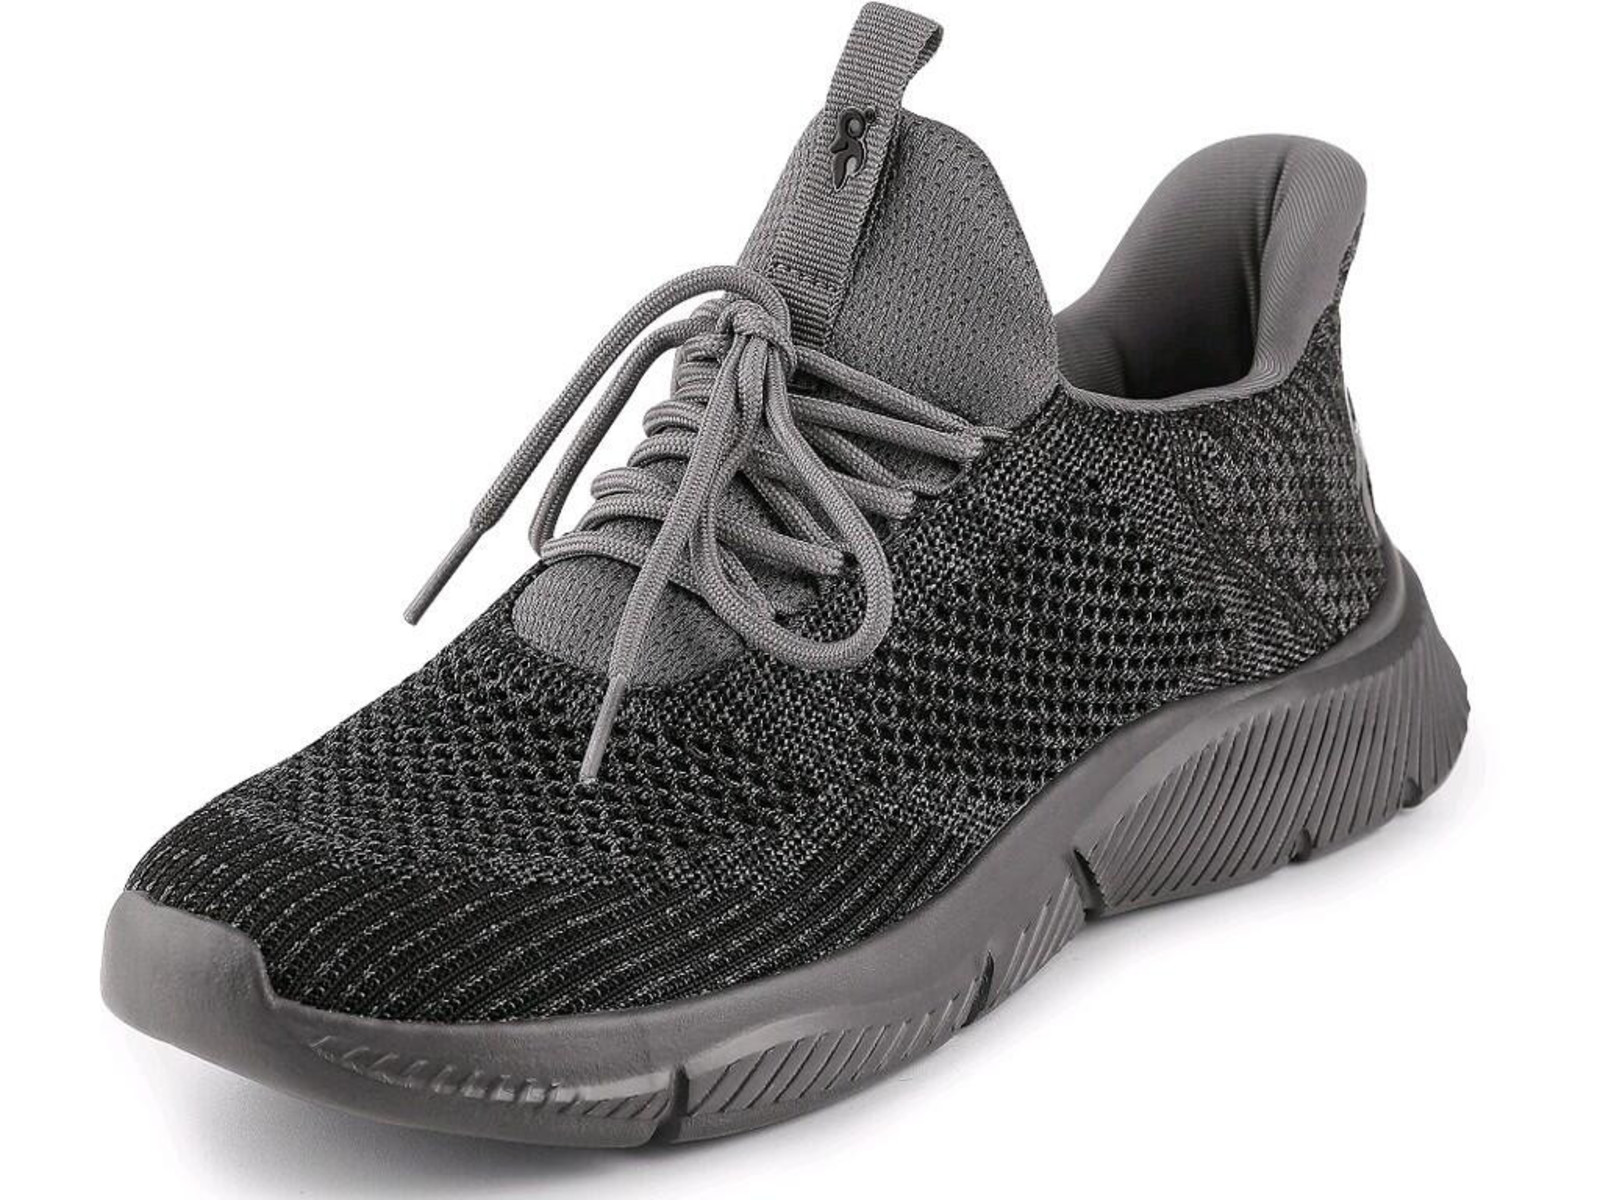 Voľnočasová obuv CXS Island Barbados - veľkosť: 37, farba: sivá/čierna